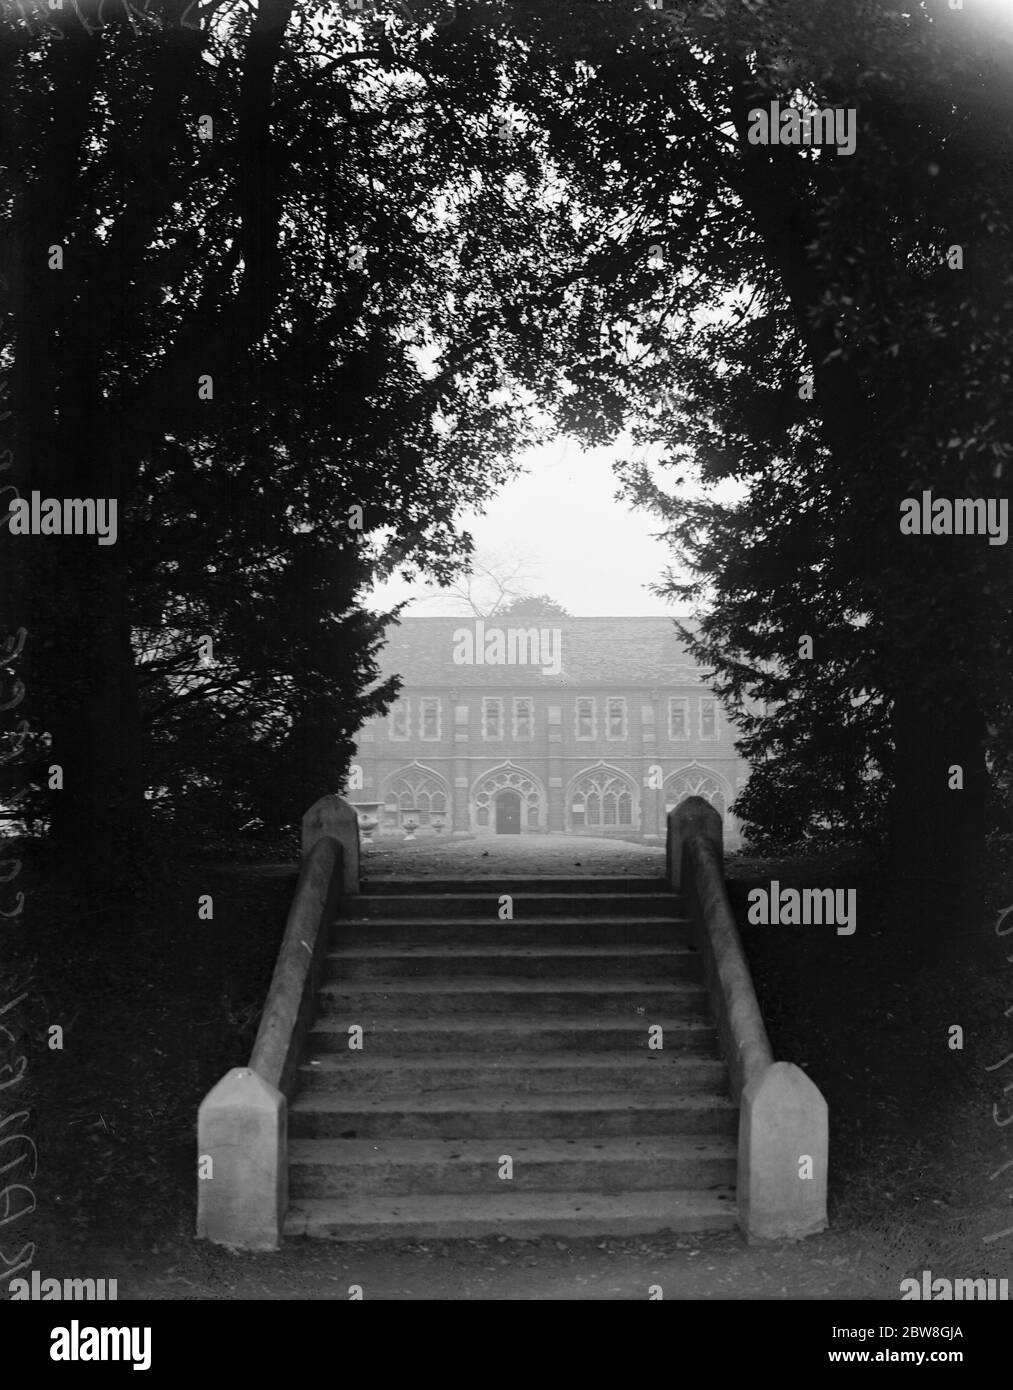 Ein bisschen englischen Charme der alten Welt in Berkshire. Radley College, Abingdon, Berks, mit seiner alten Welt Umgebung, präsentiert ein herrliches Bild. Dezember 1927 Stockfoto